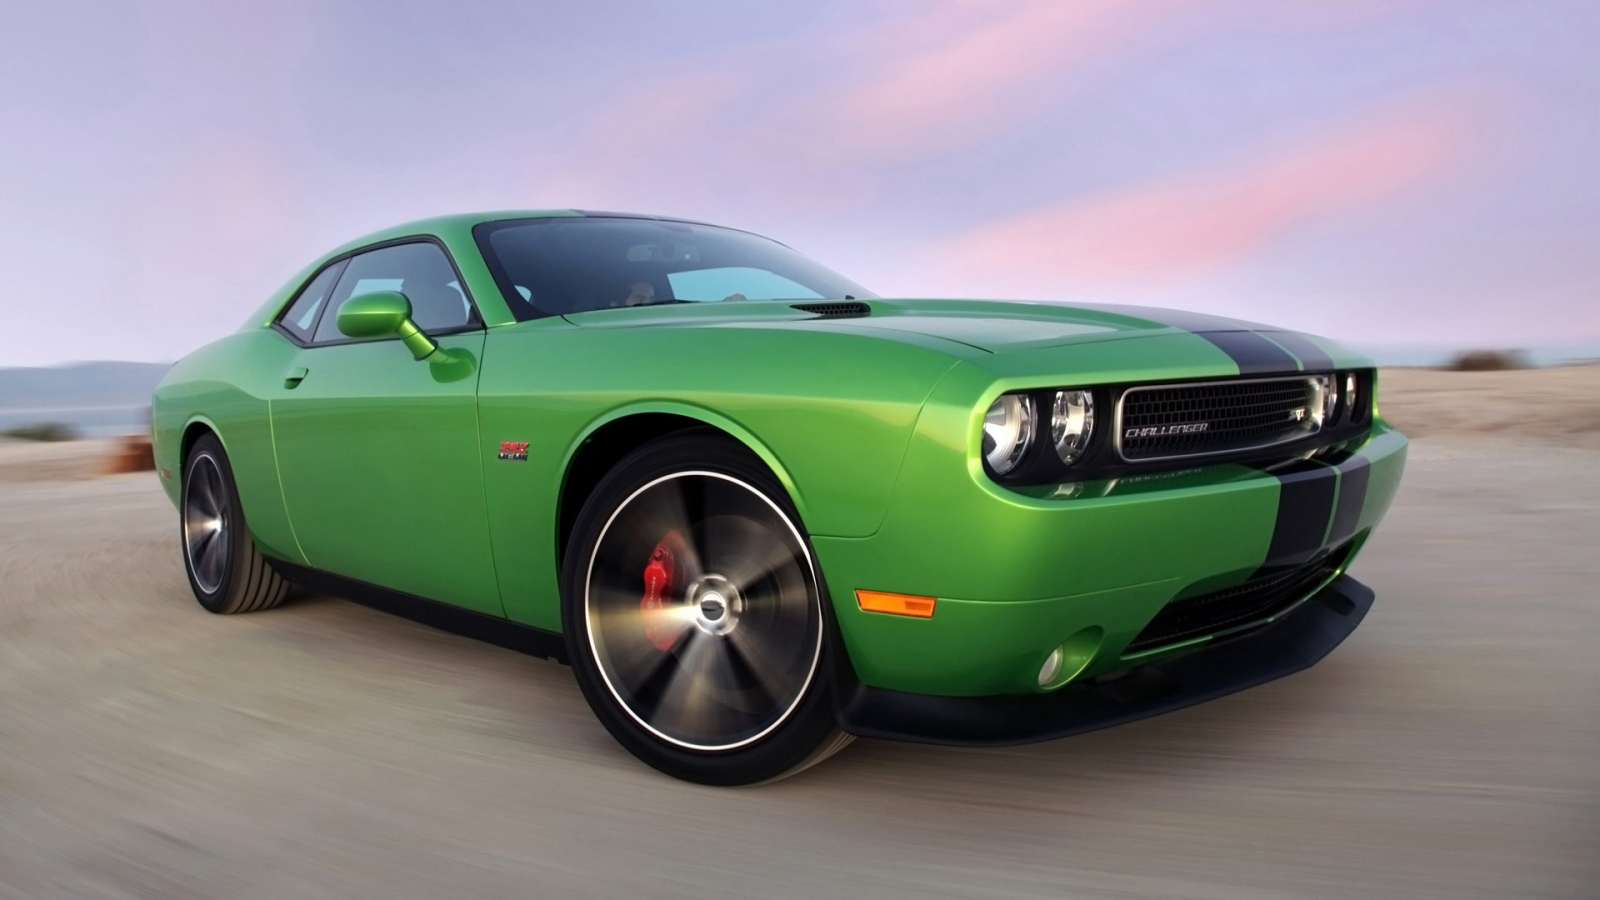 2011 Dodge Challenger Green for 1600 x 900 HDTV resolution